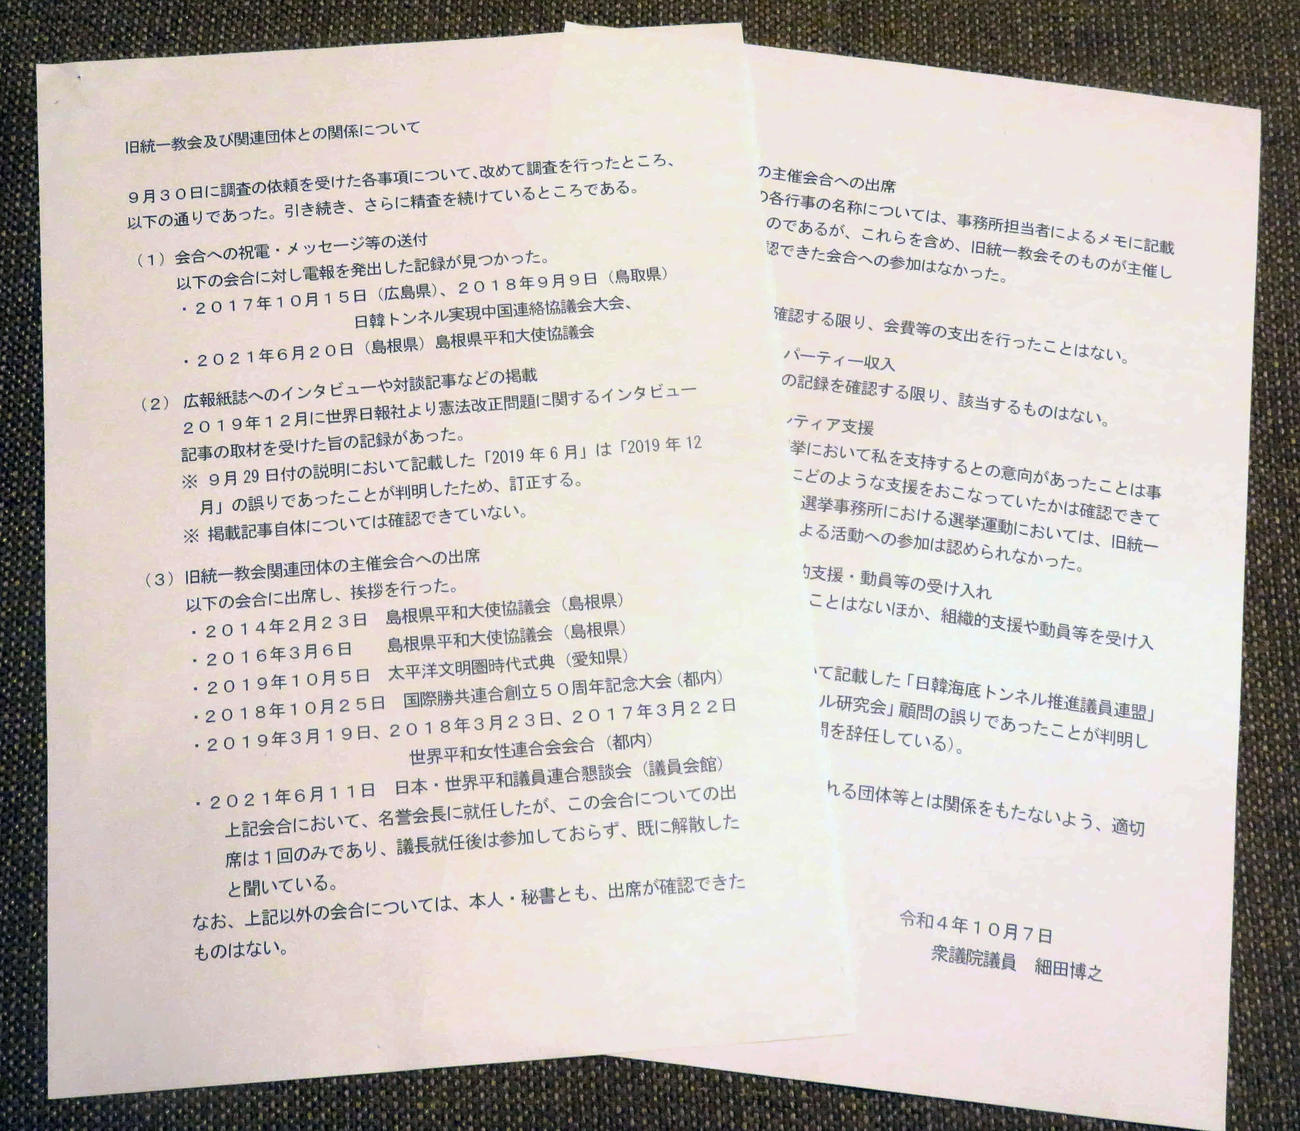 細田博之衆院議長は旧統一教会との接点を文書2枚で追加報告した